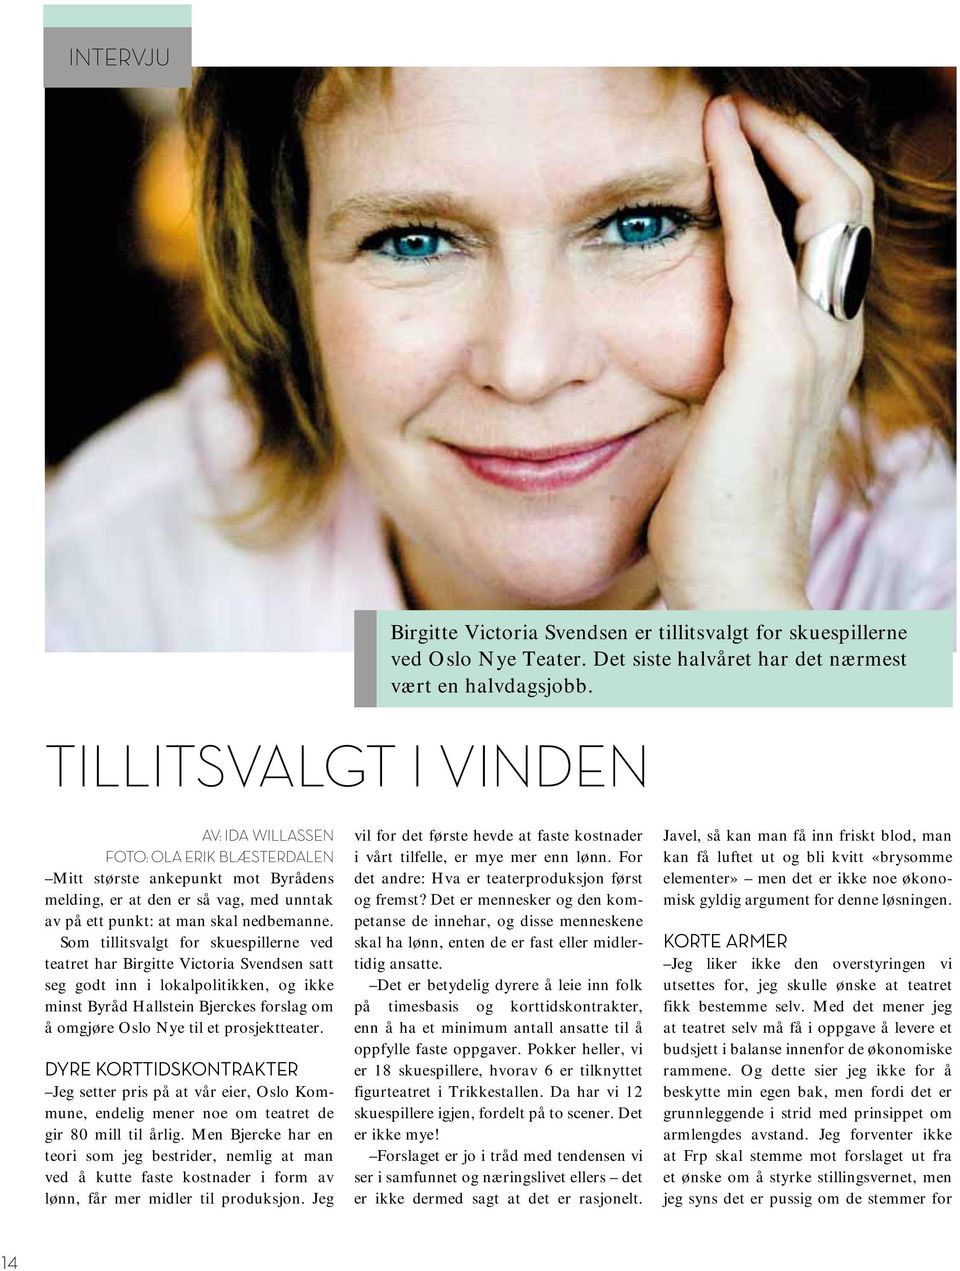 Som tillitsvalgt for skuespillerne ved teatret har Birgitte Victoria Svendsen satt seg godt inn i lokalpolitikken, og ikke minst Byråd Hallstein Bjerckes forslag om å omgjøre Oslo Nye til et